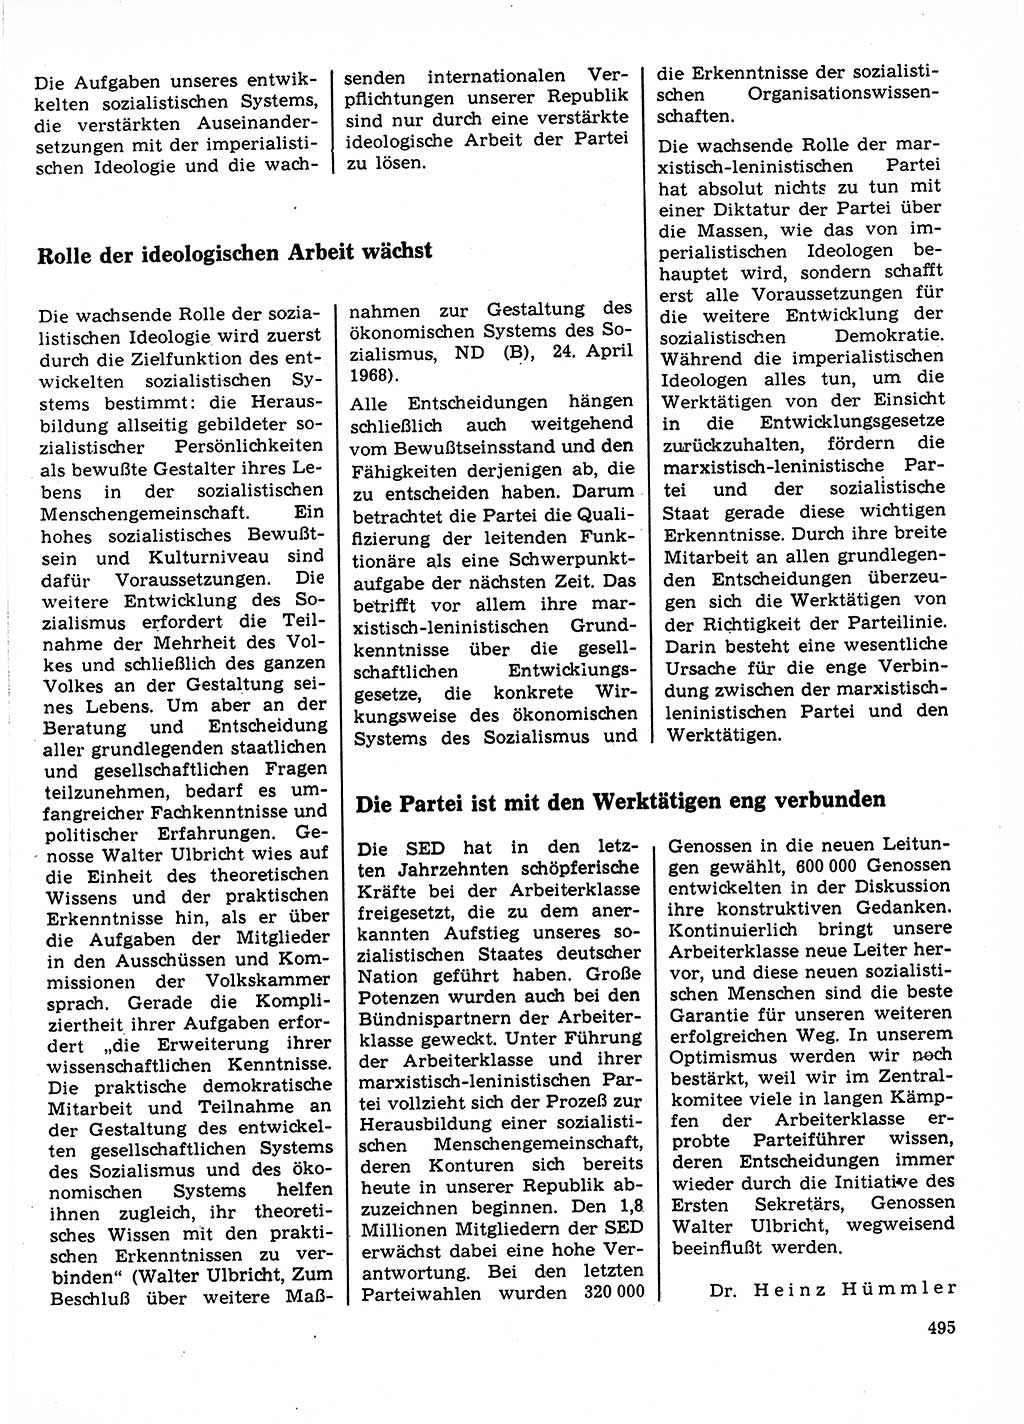 Neuer Weg (NW), Organ des Zentralkomitees (ZK) der SED (Sozialistische Einheitspartei Deutschlands) für Fragen des Parteilebens, 23. Jahrgang [Deutsche Demokratische Republik (DDR)] 1968, Seite 495 (NW ZK SED DDR 1968, S. 495)